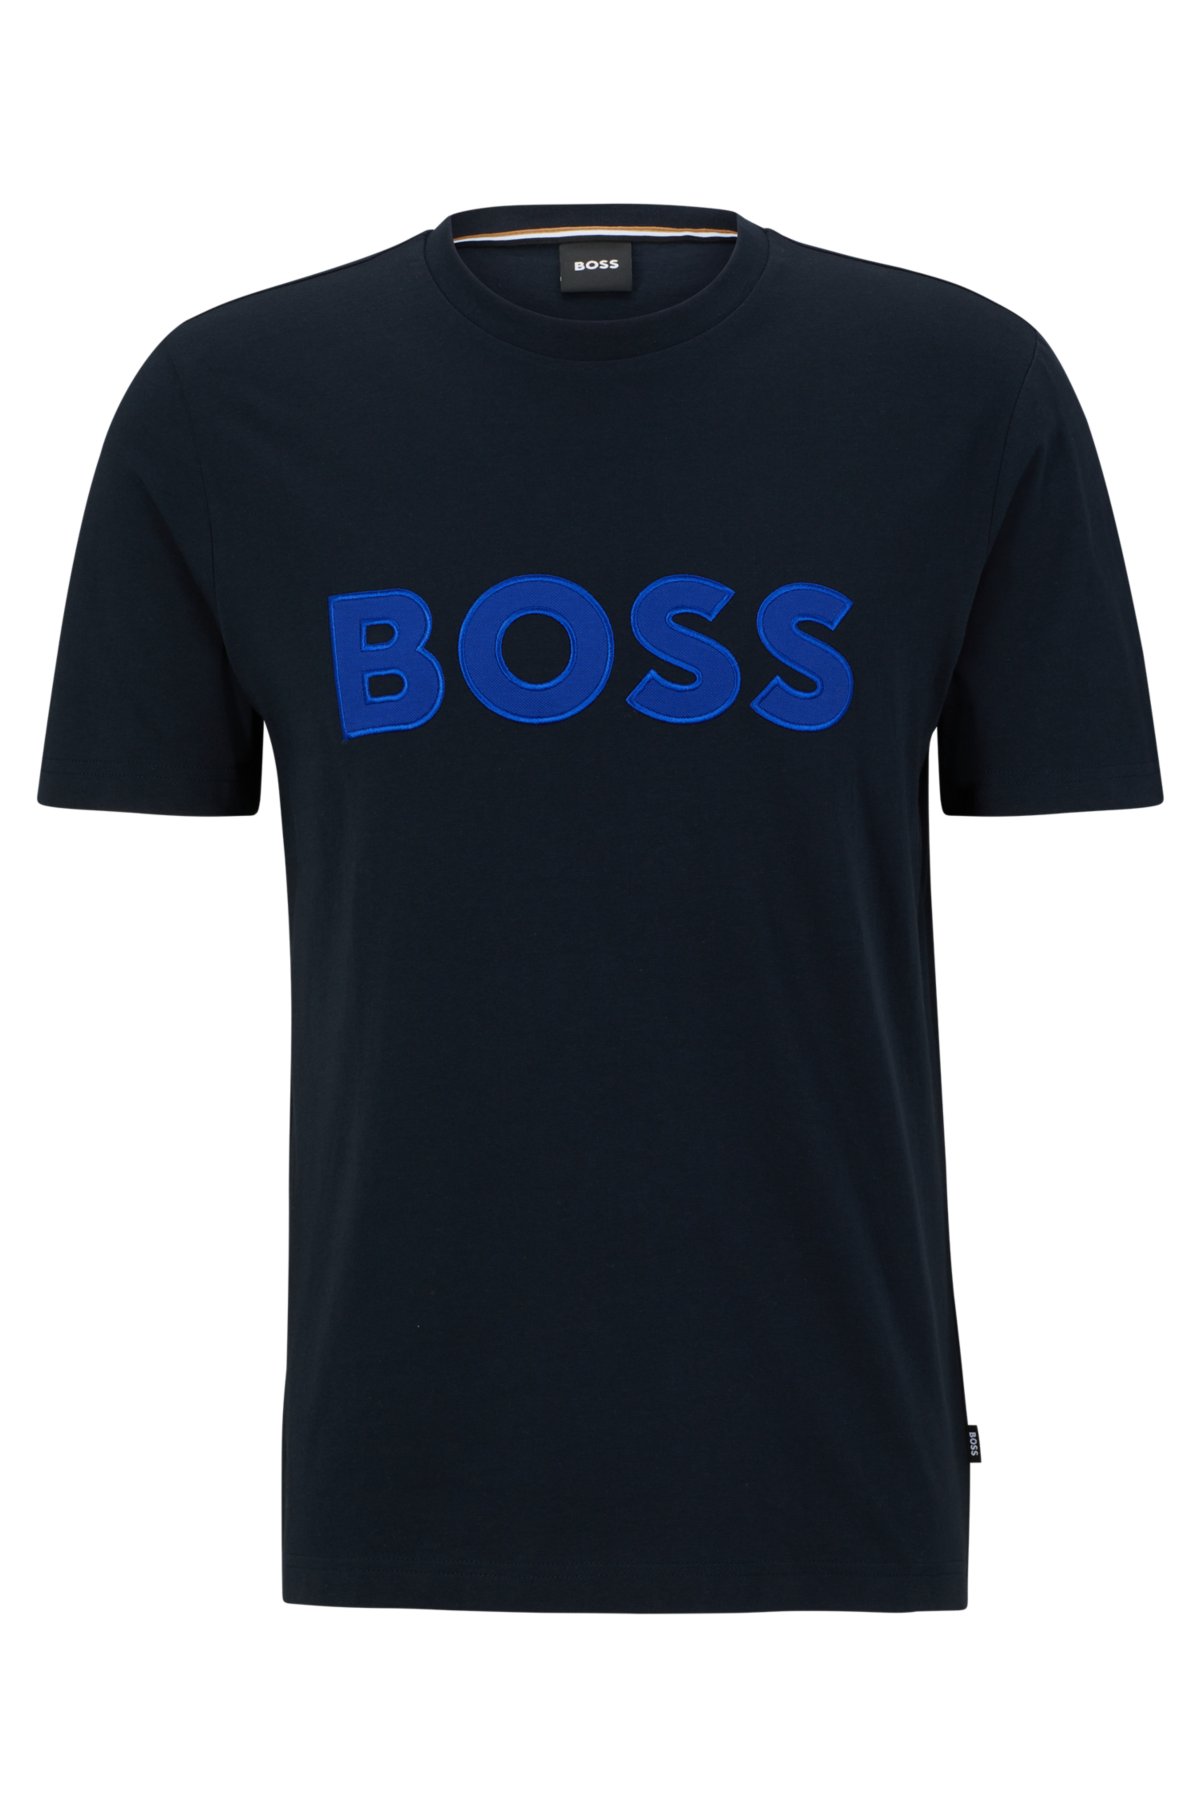 BOSS - Cotton-jersey appliqué logo with T-shirt regular-fit